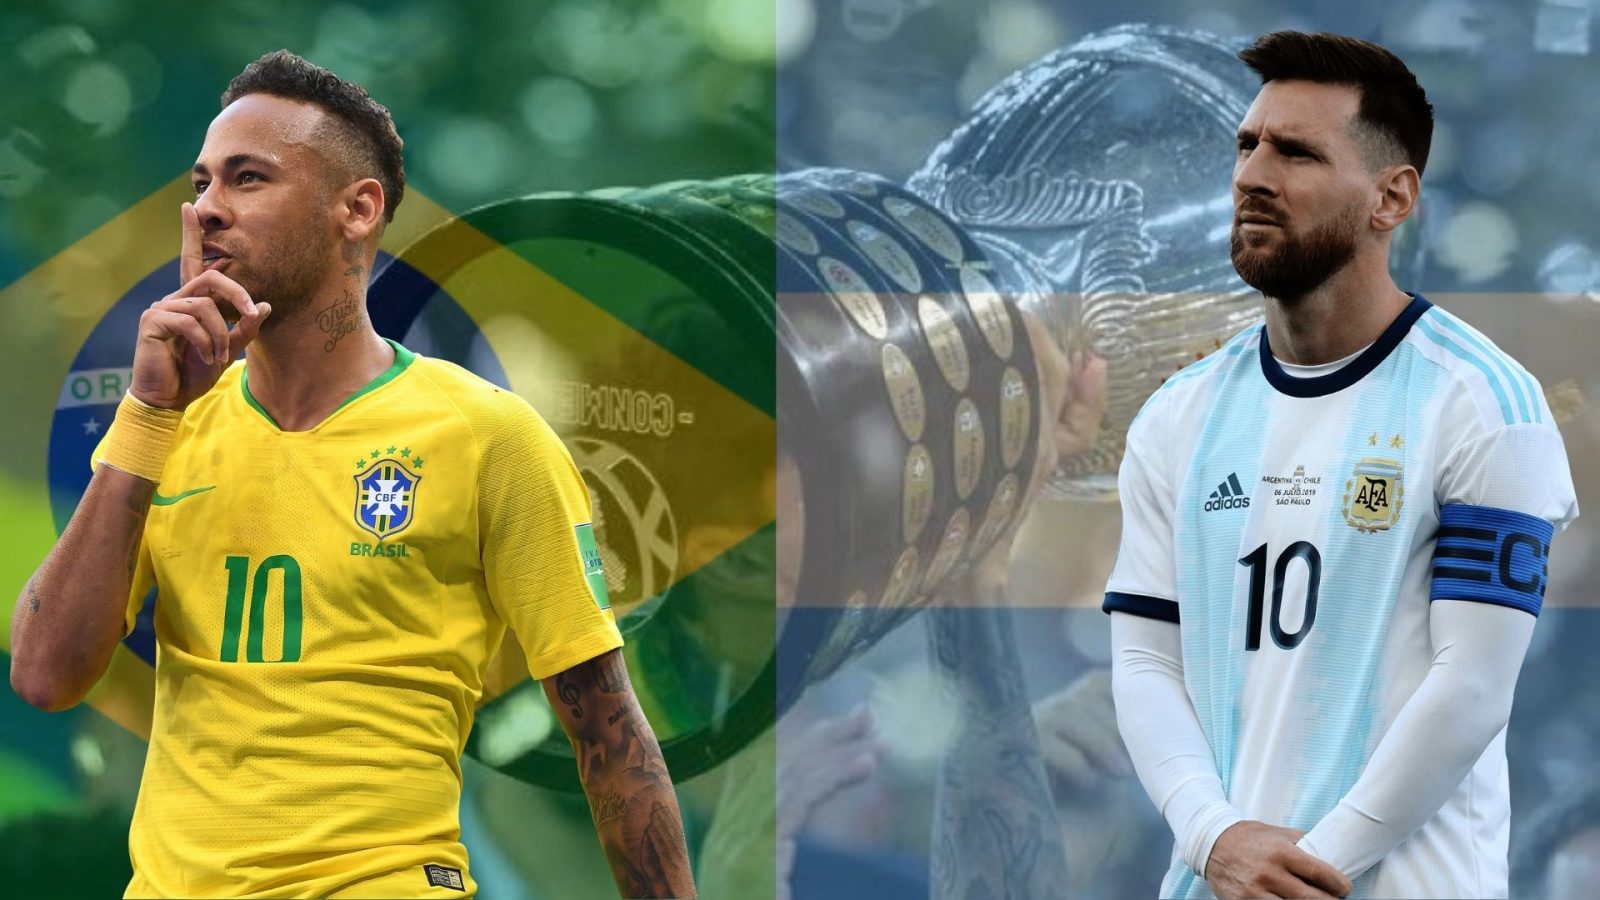 فيفا يحدد موعد مباراة منتخب البرازيل والأرجنتين في تصفيات أمريكا الجنوبية